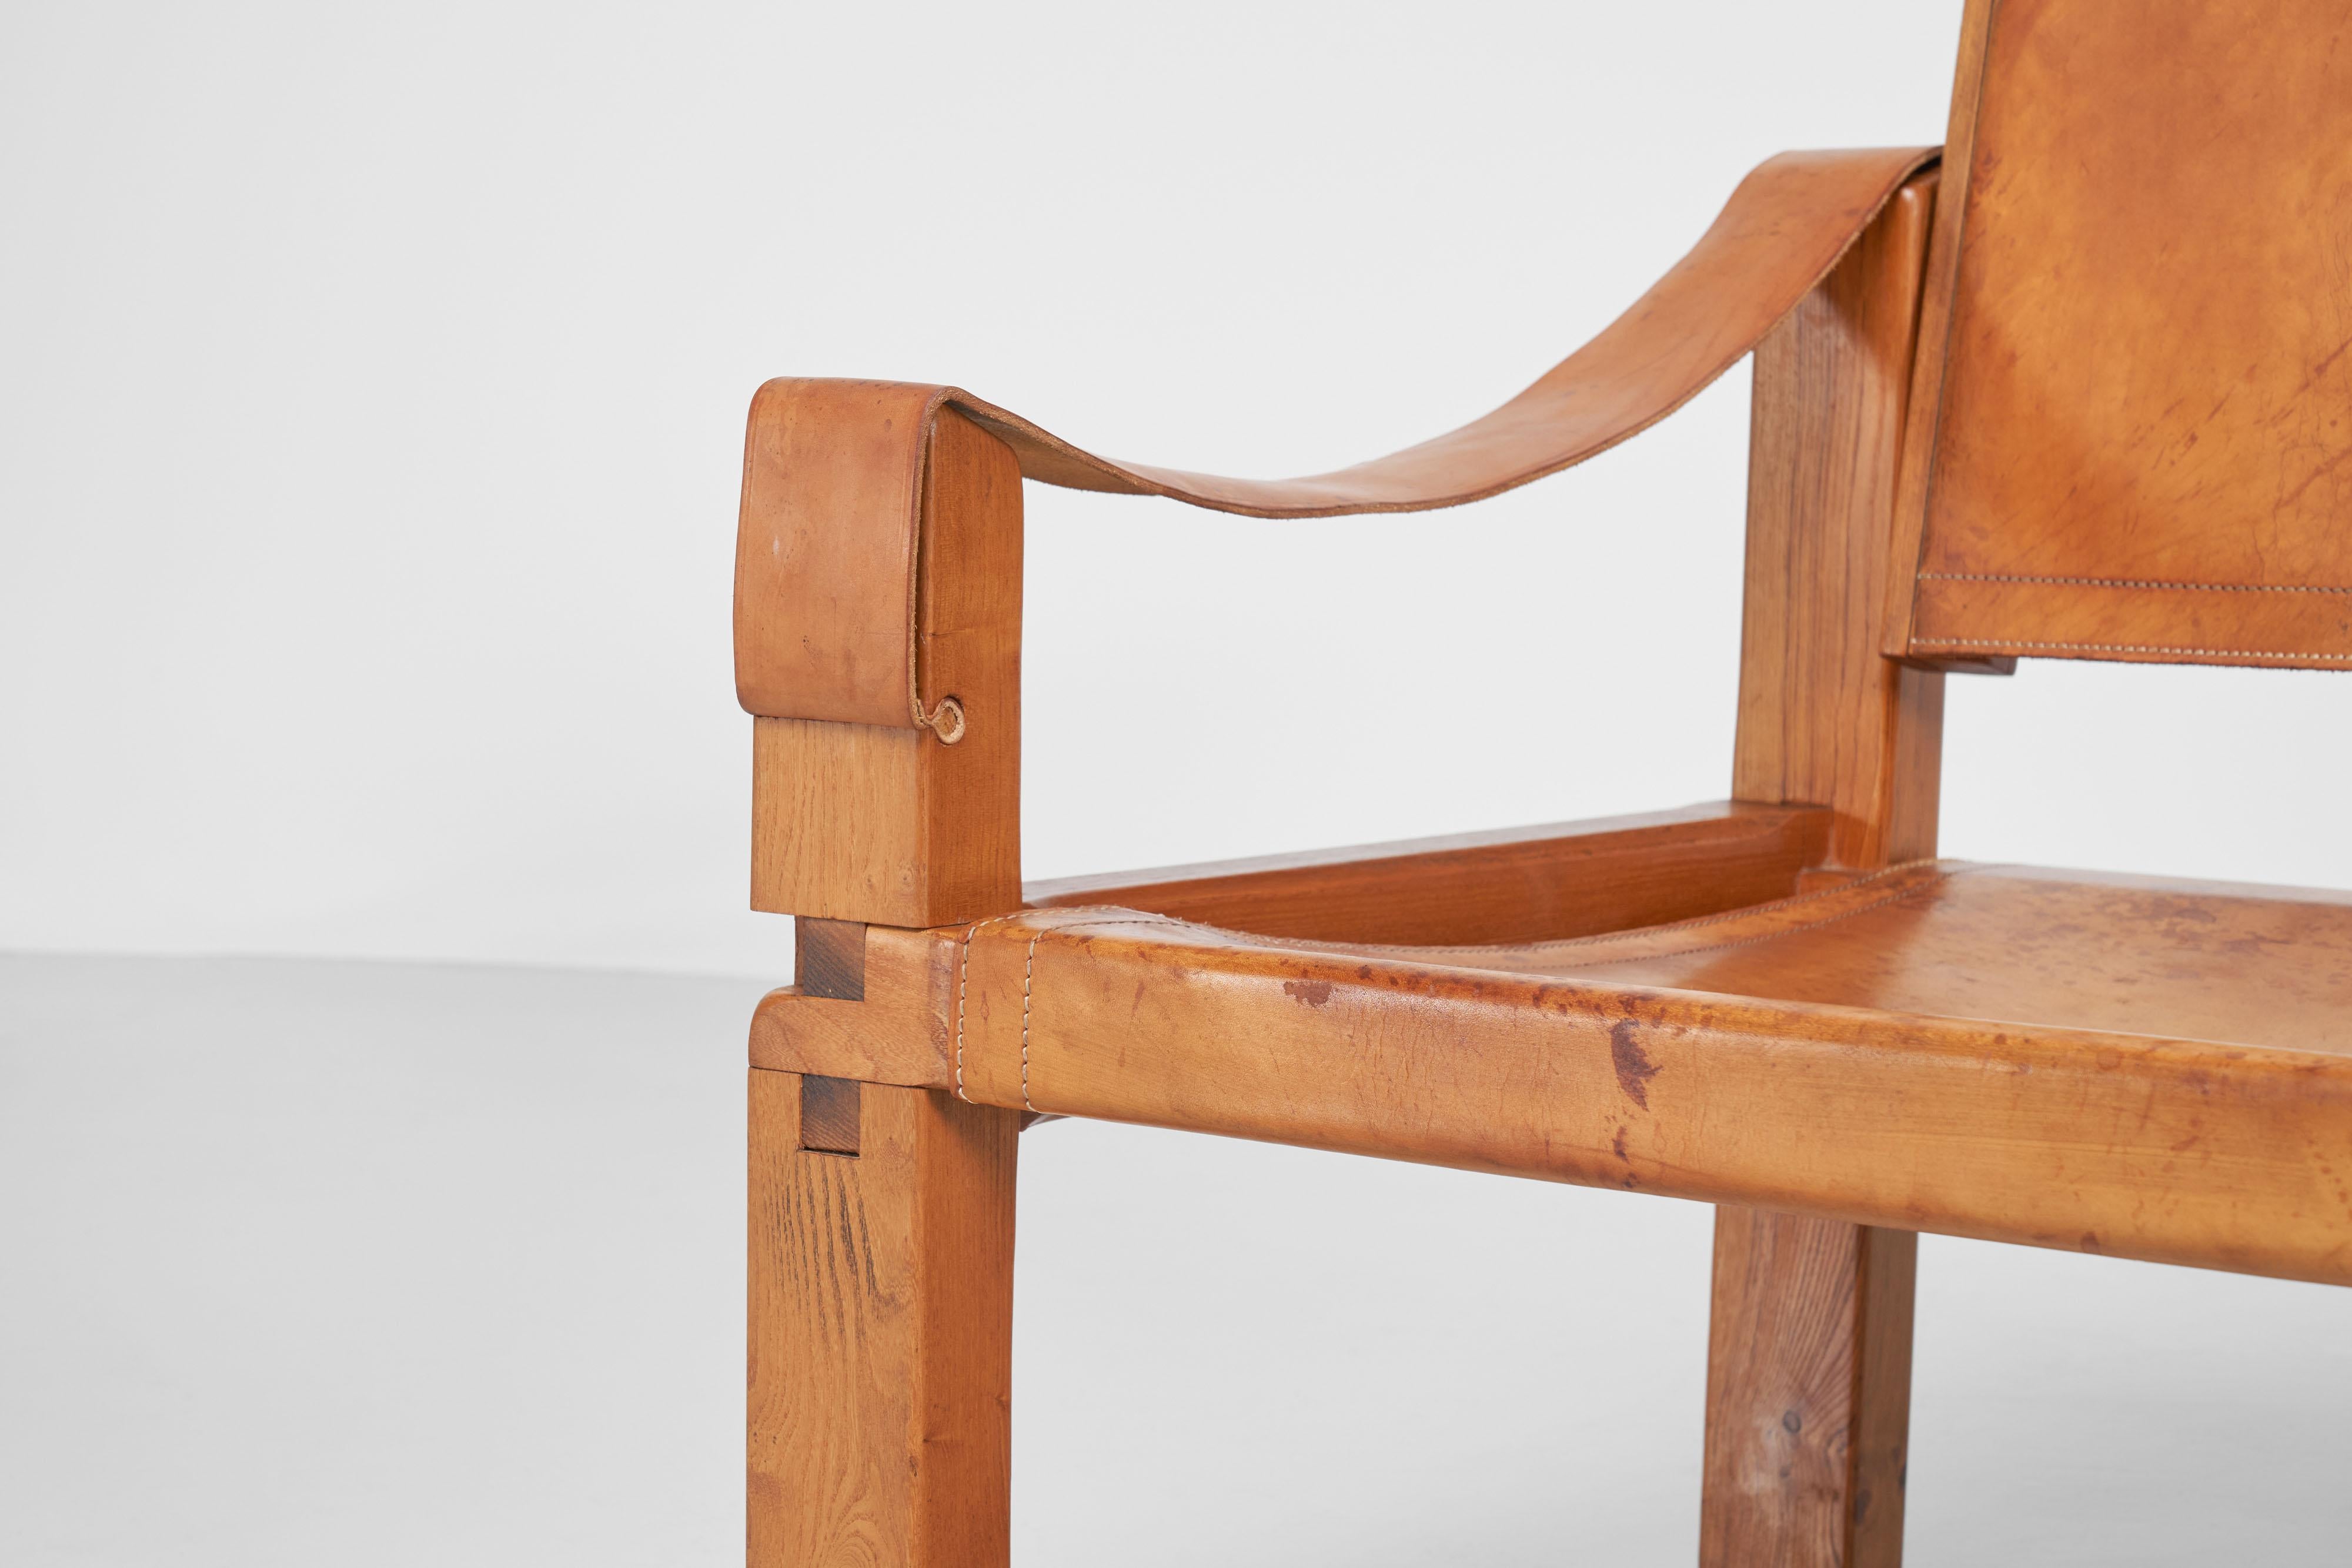 Fantastique modèle original de chaise longue S10 conçue par Pierre Chapo et fabriquée dans son propre atelier à Gordes, France 1964. Cette chaise a un cadre en orme massif dont la structure exquise et détaillée est affinée par les assemblages à